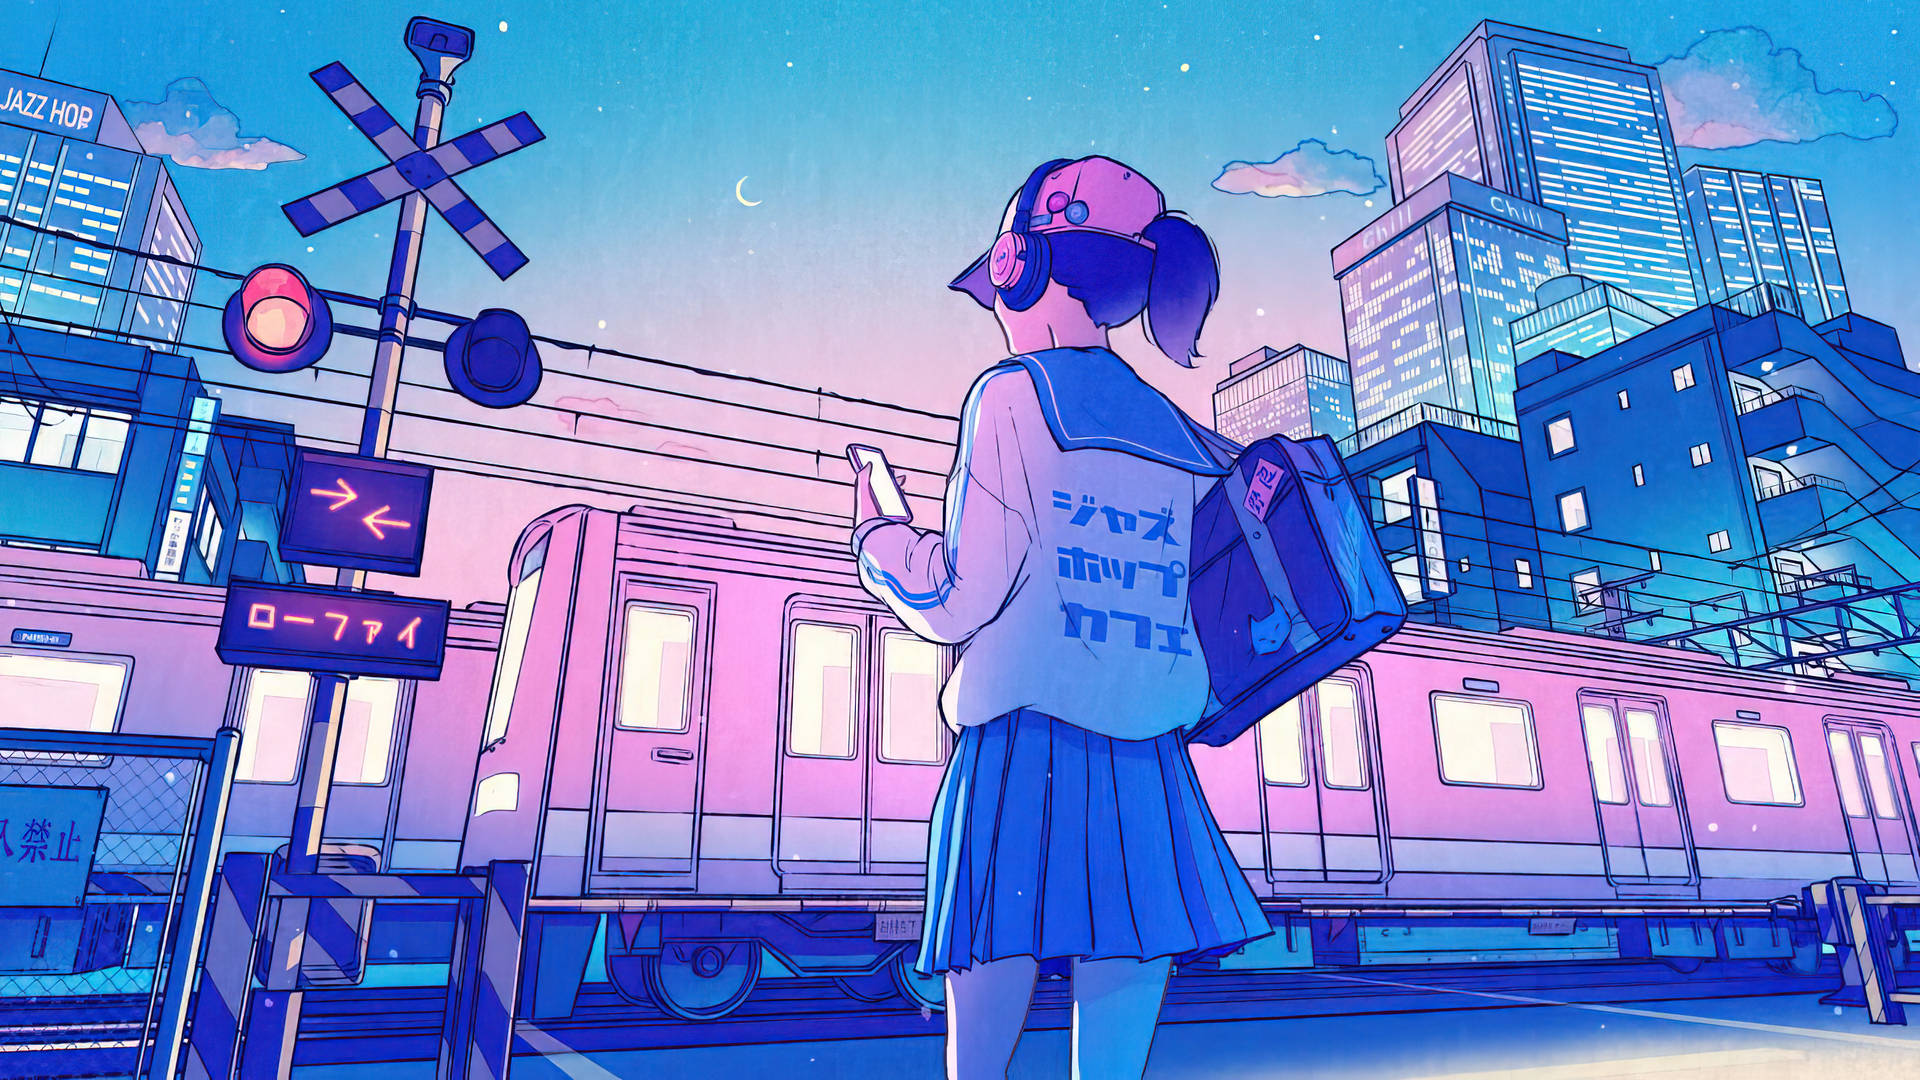 Japanese Anime Girl Student Train Station Wallpaper